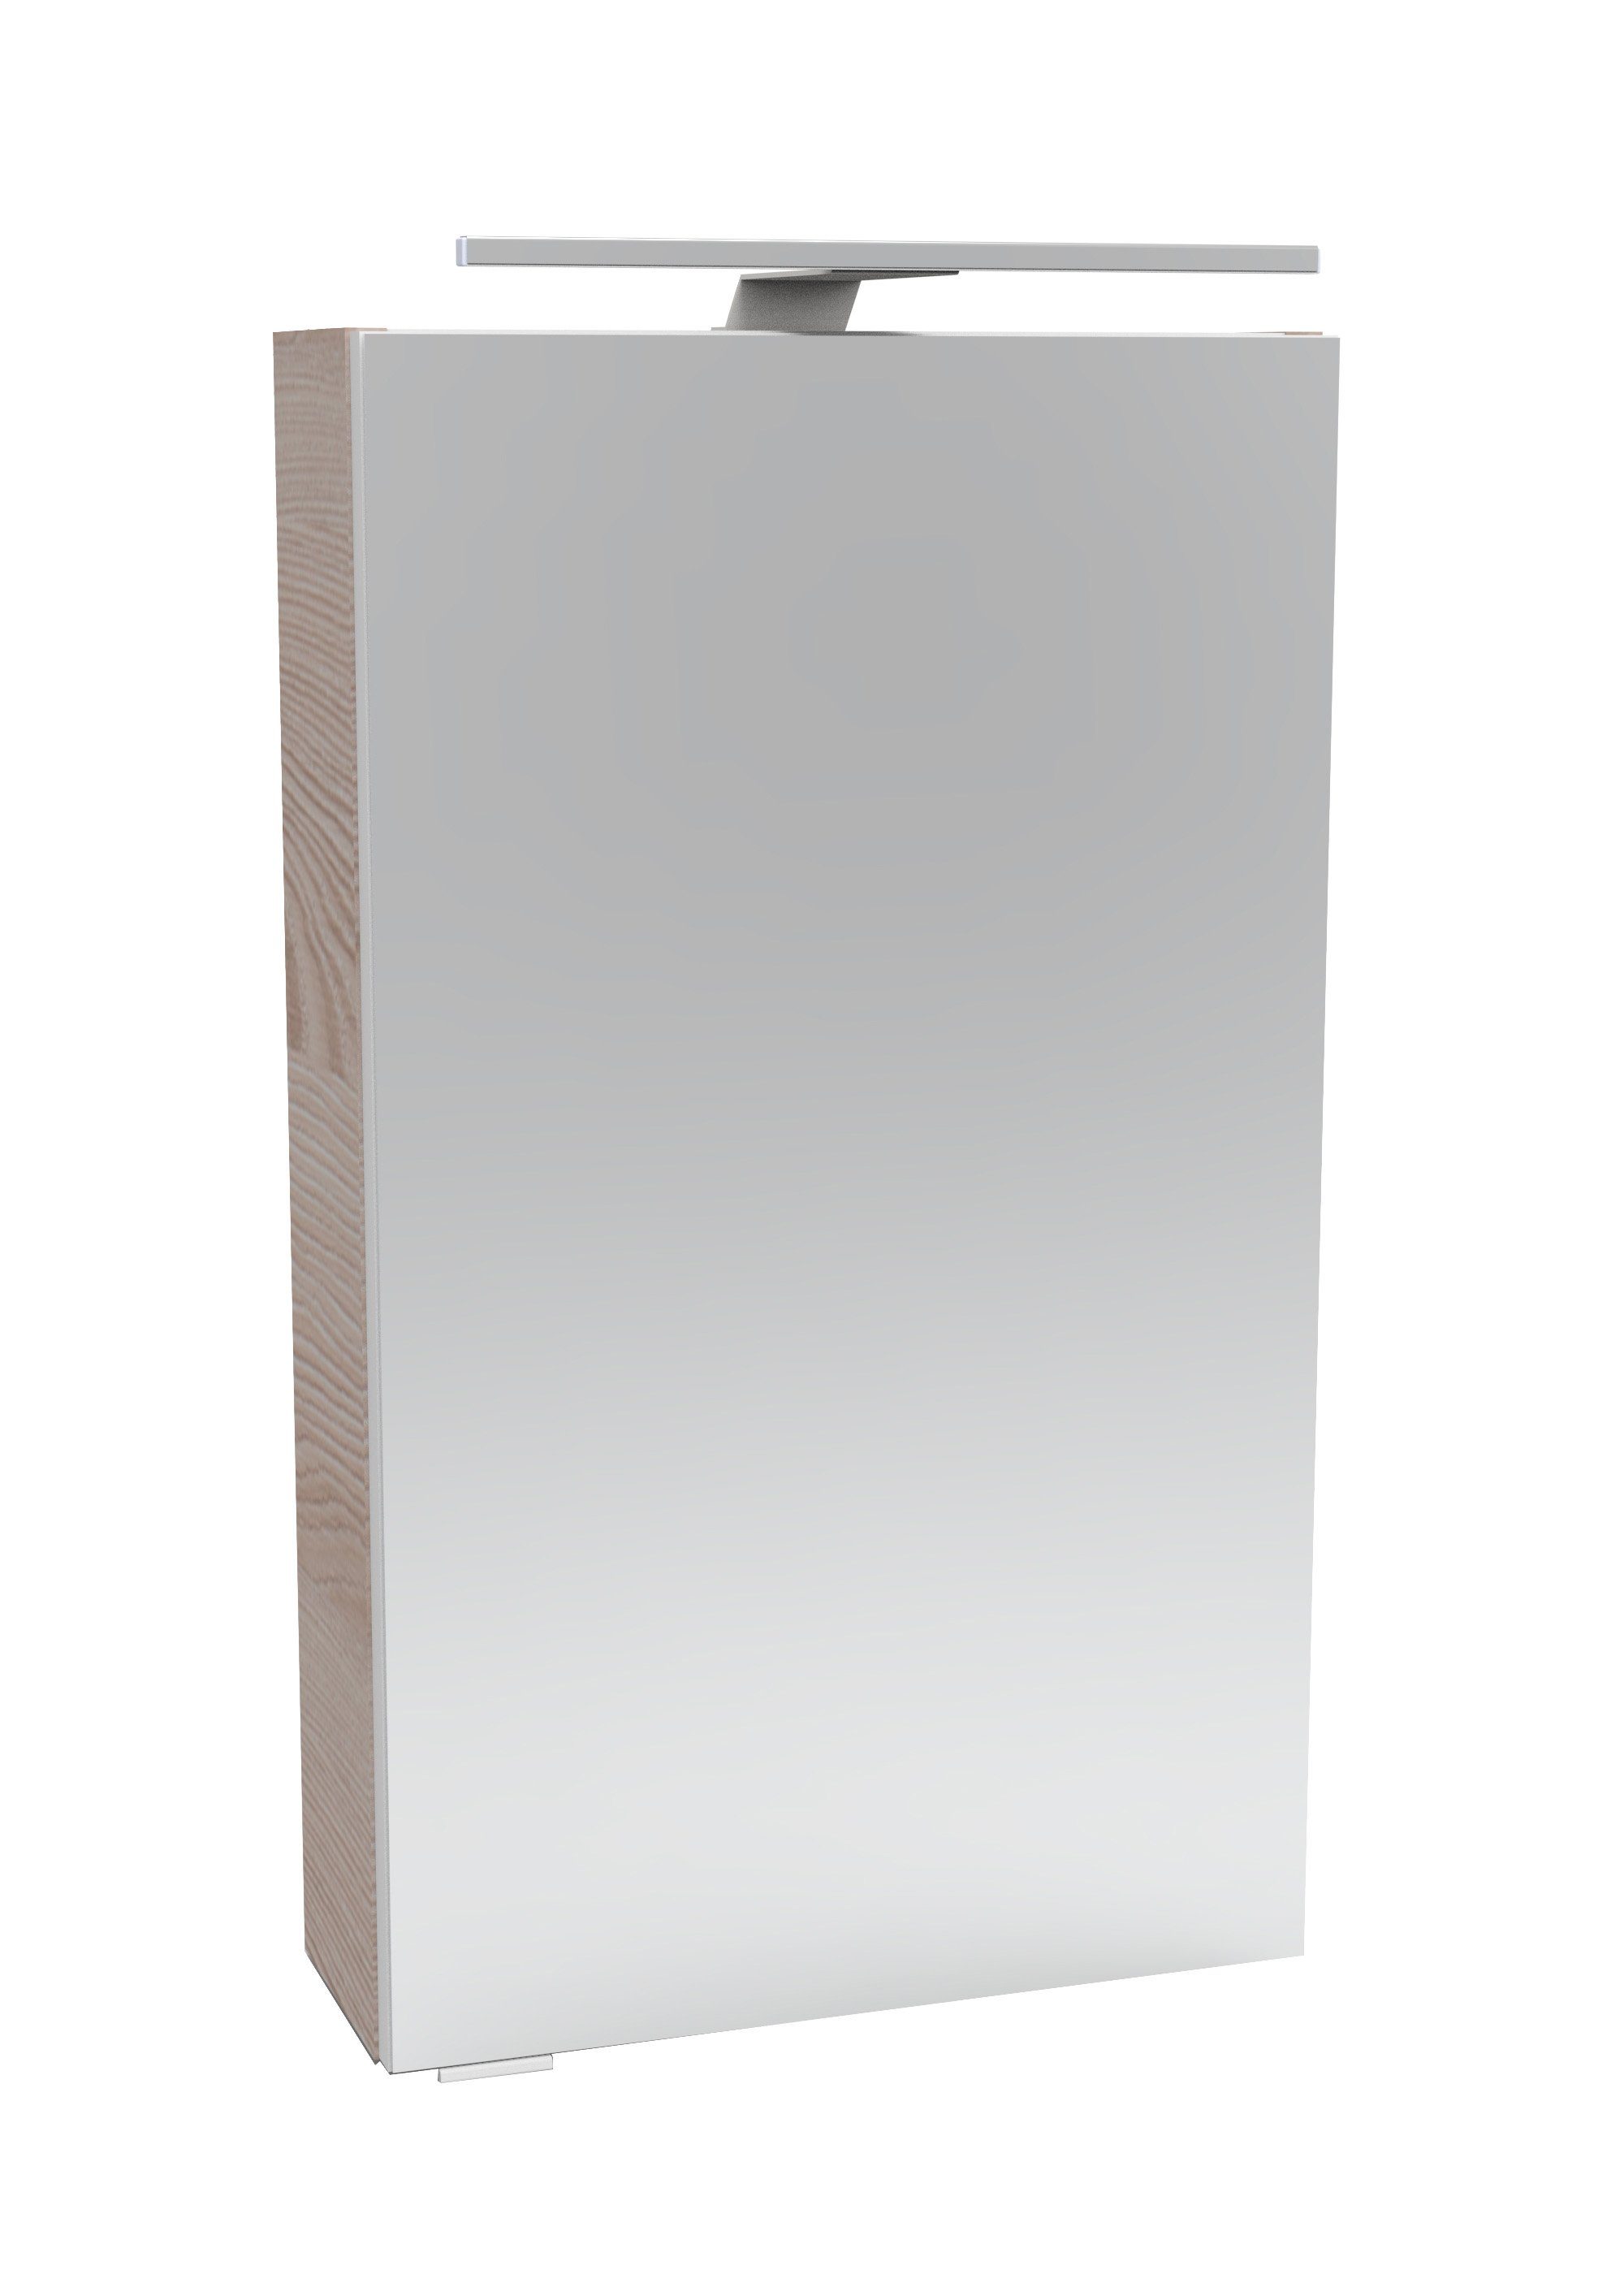 FACKELMANN Spiegelschrank SBC (Spiegelschrank mit LED-Aufsatzleuchte) Aufsatzleuchte, Schalter und Steckdose, Breite 40cm, Anschlag rechts